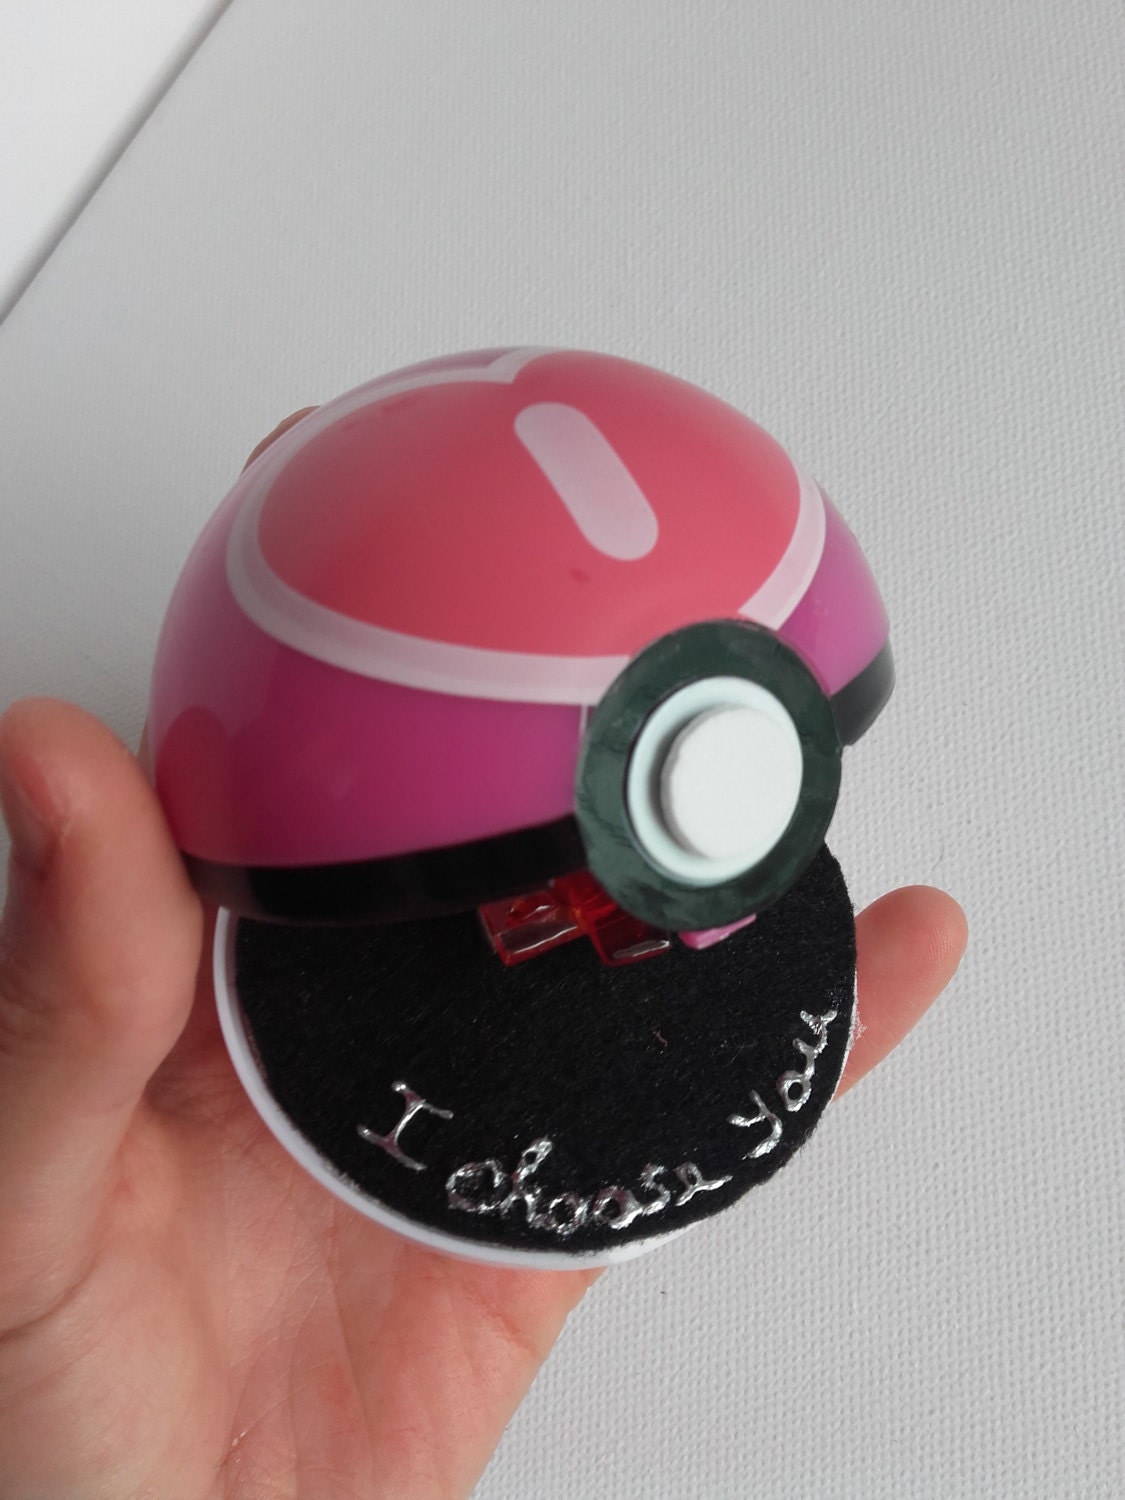 I choose you pokemon engagement ring box